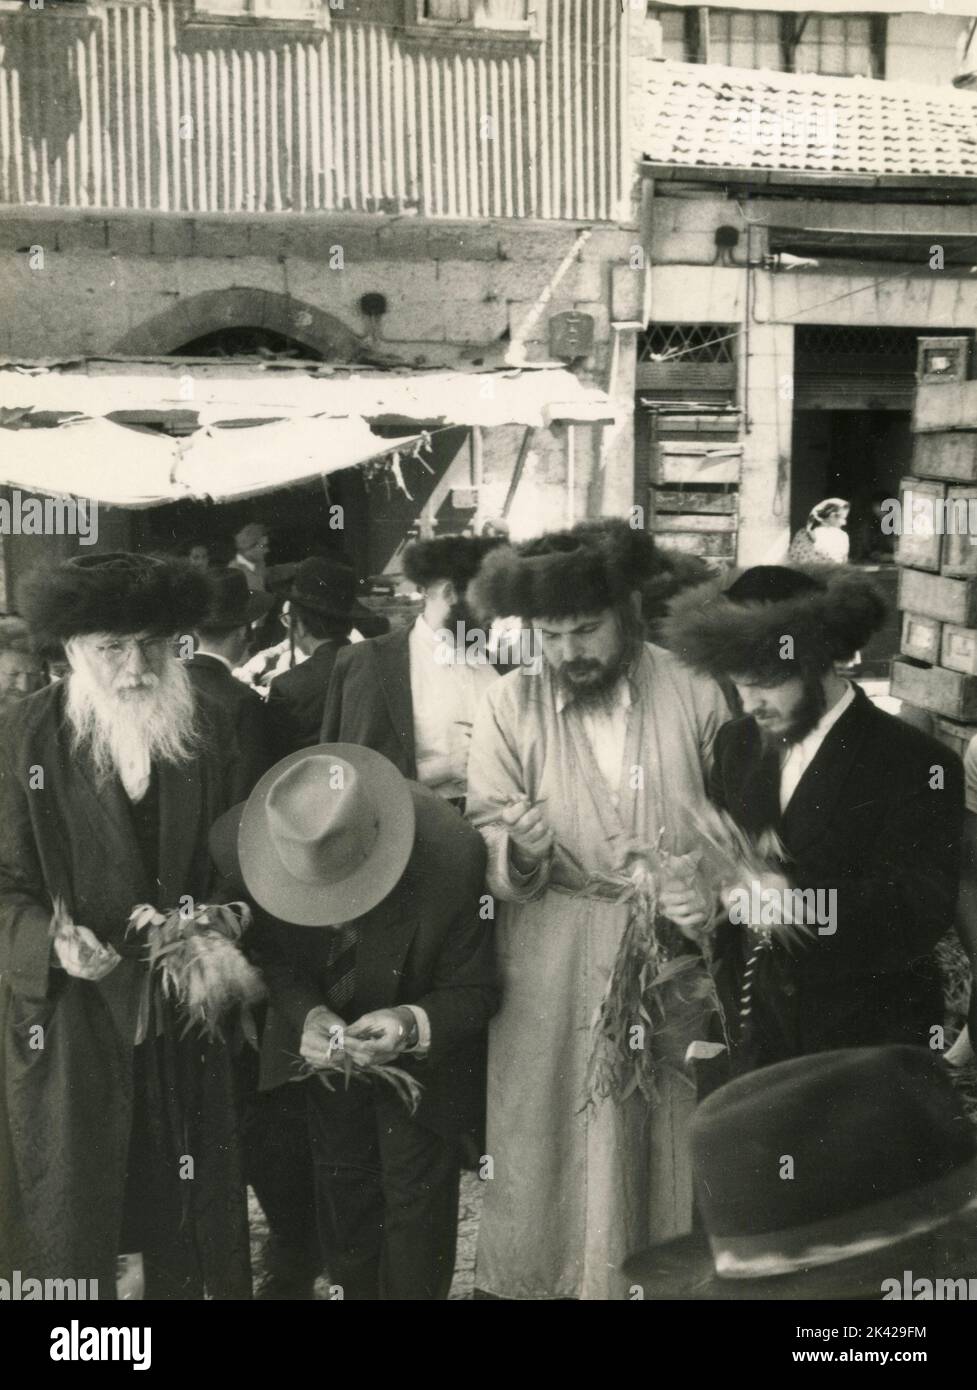 Aschkenasische jüdische Männer mit Shtreimel-Hut auf dem Mea-Shearim-Markt, Jerusalem, Israel 1950s Stockfoto